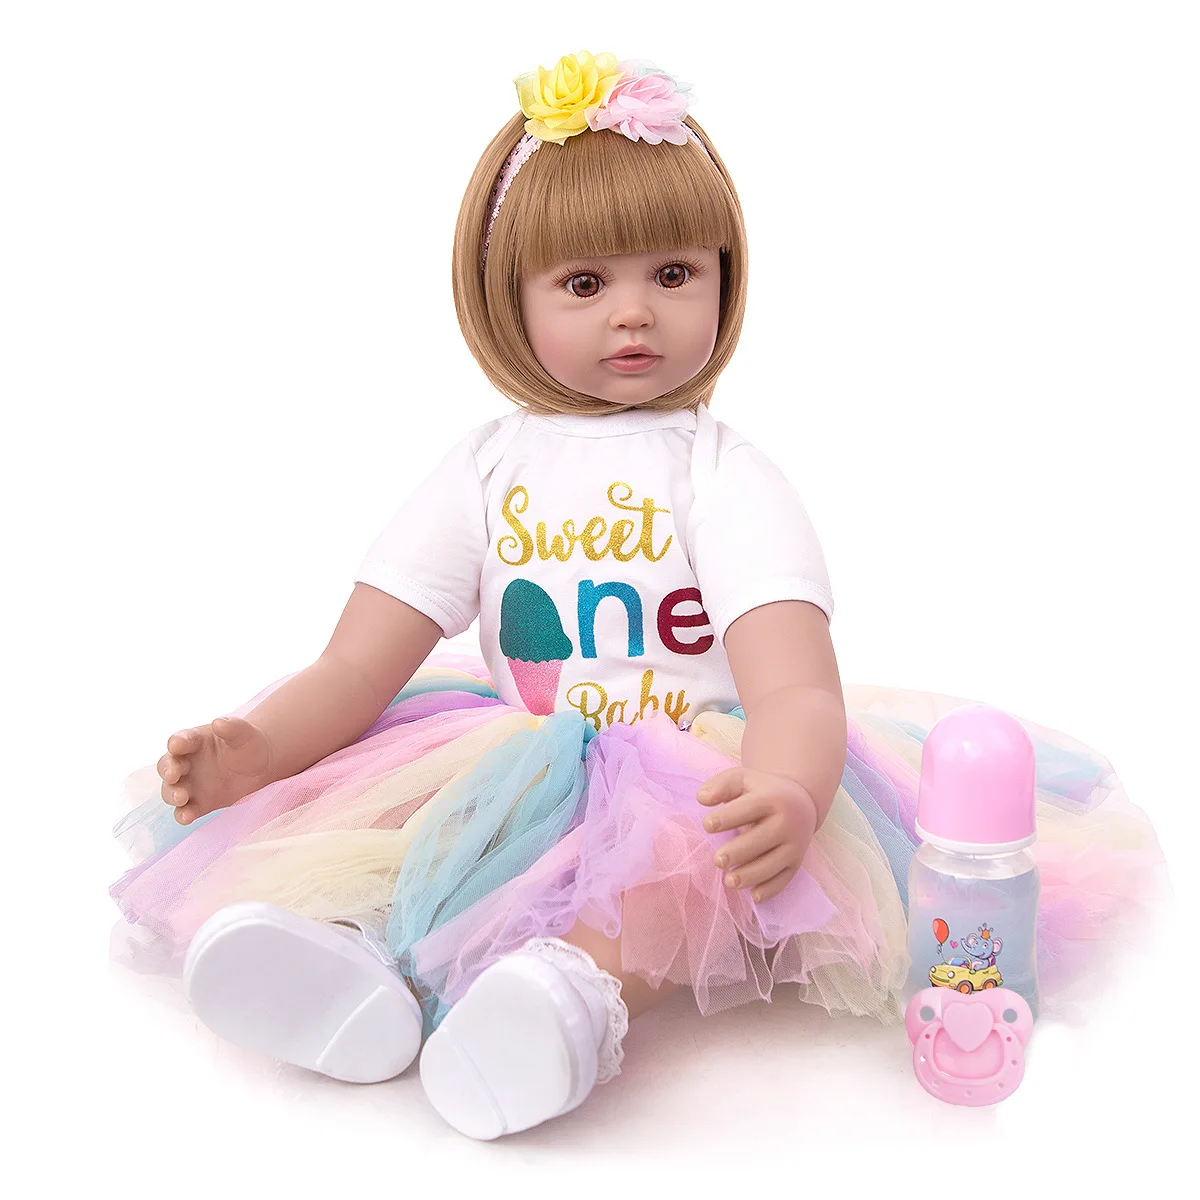 

KEIUMI 24 дюйма Новорожденный ребенок ткань тело моделирование Девочка Малыш живая силиконовая виниловая кукла светлые волосы принцесса плать...